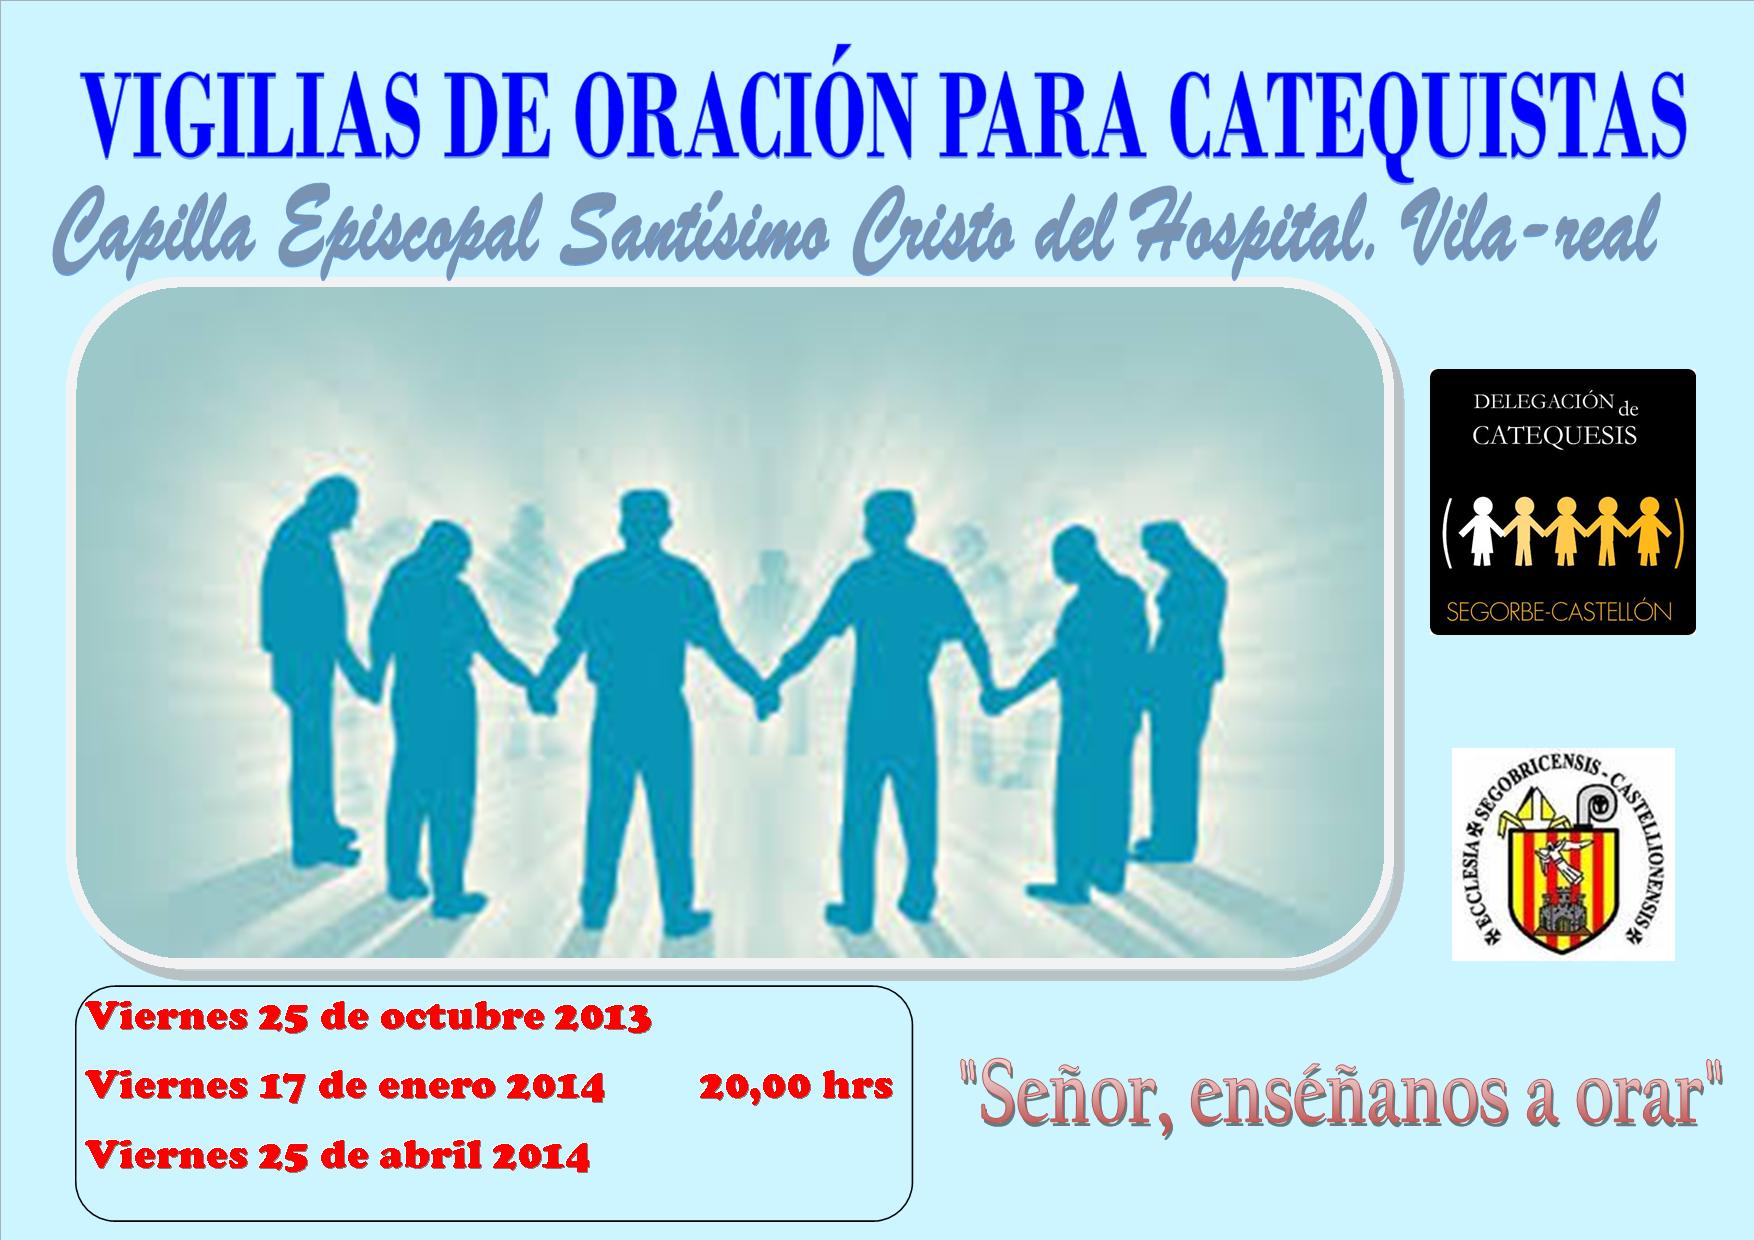 CARTEL VIGILIAS DE ORACION CATEQUISTAS 2013-2014